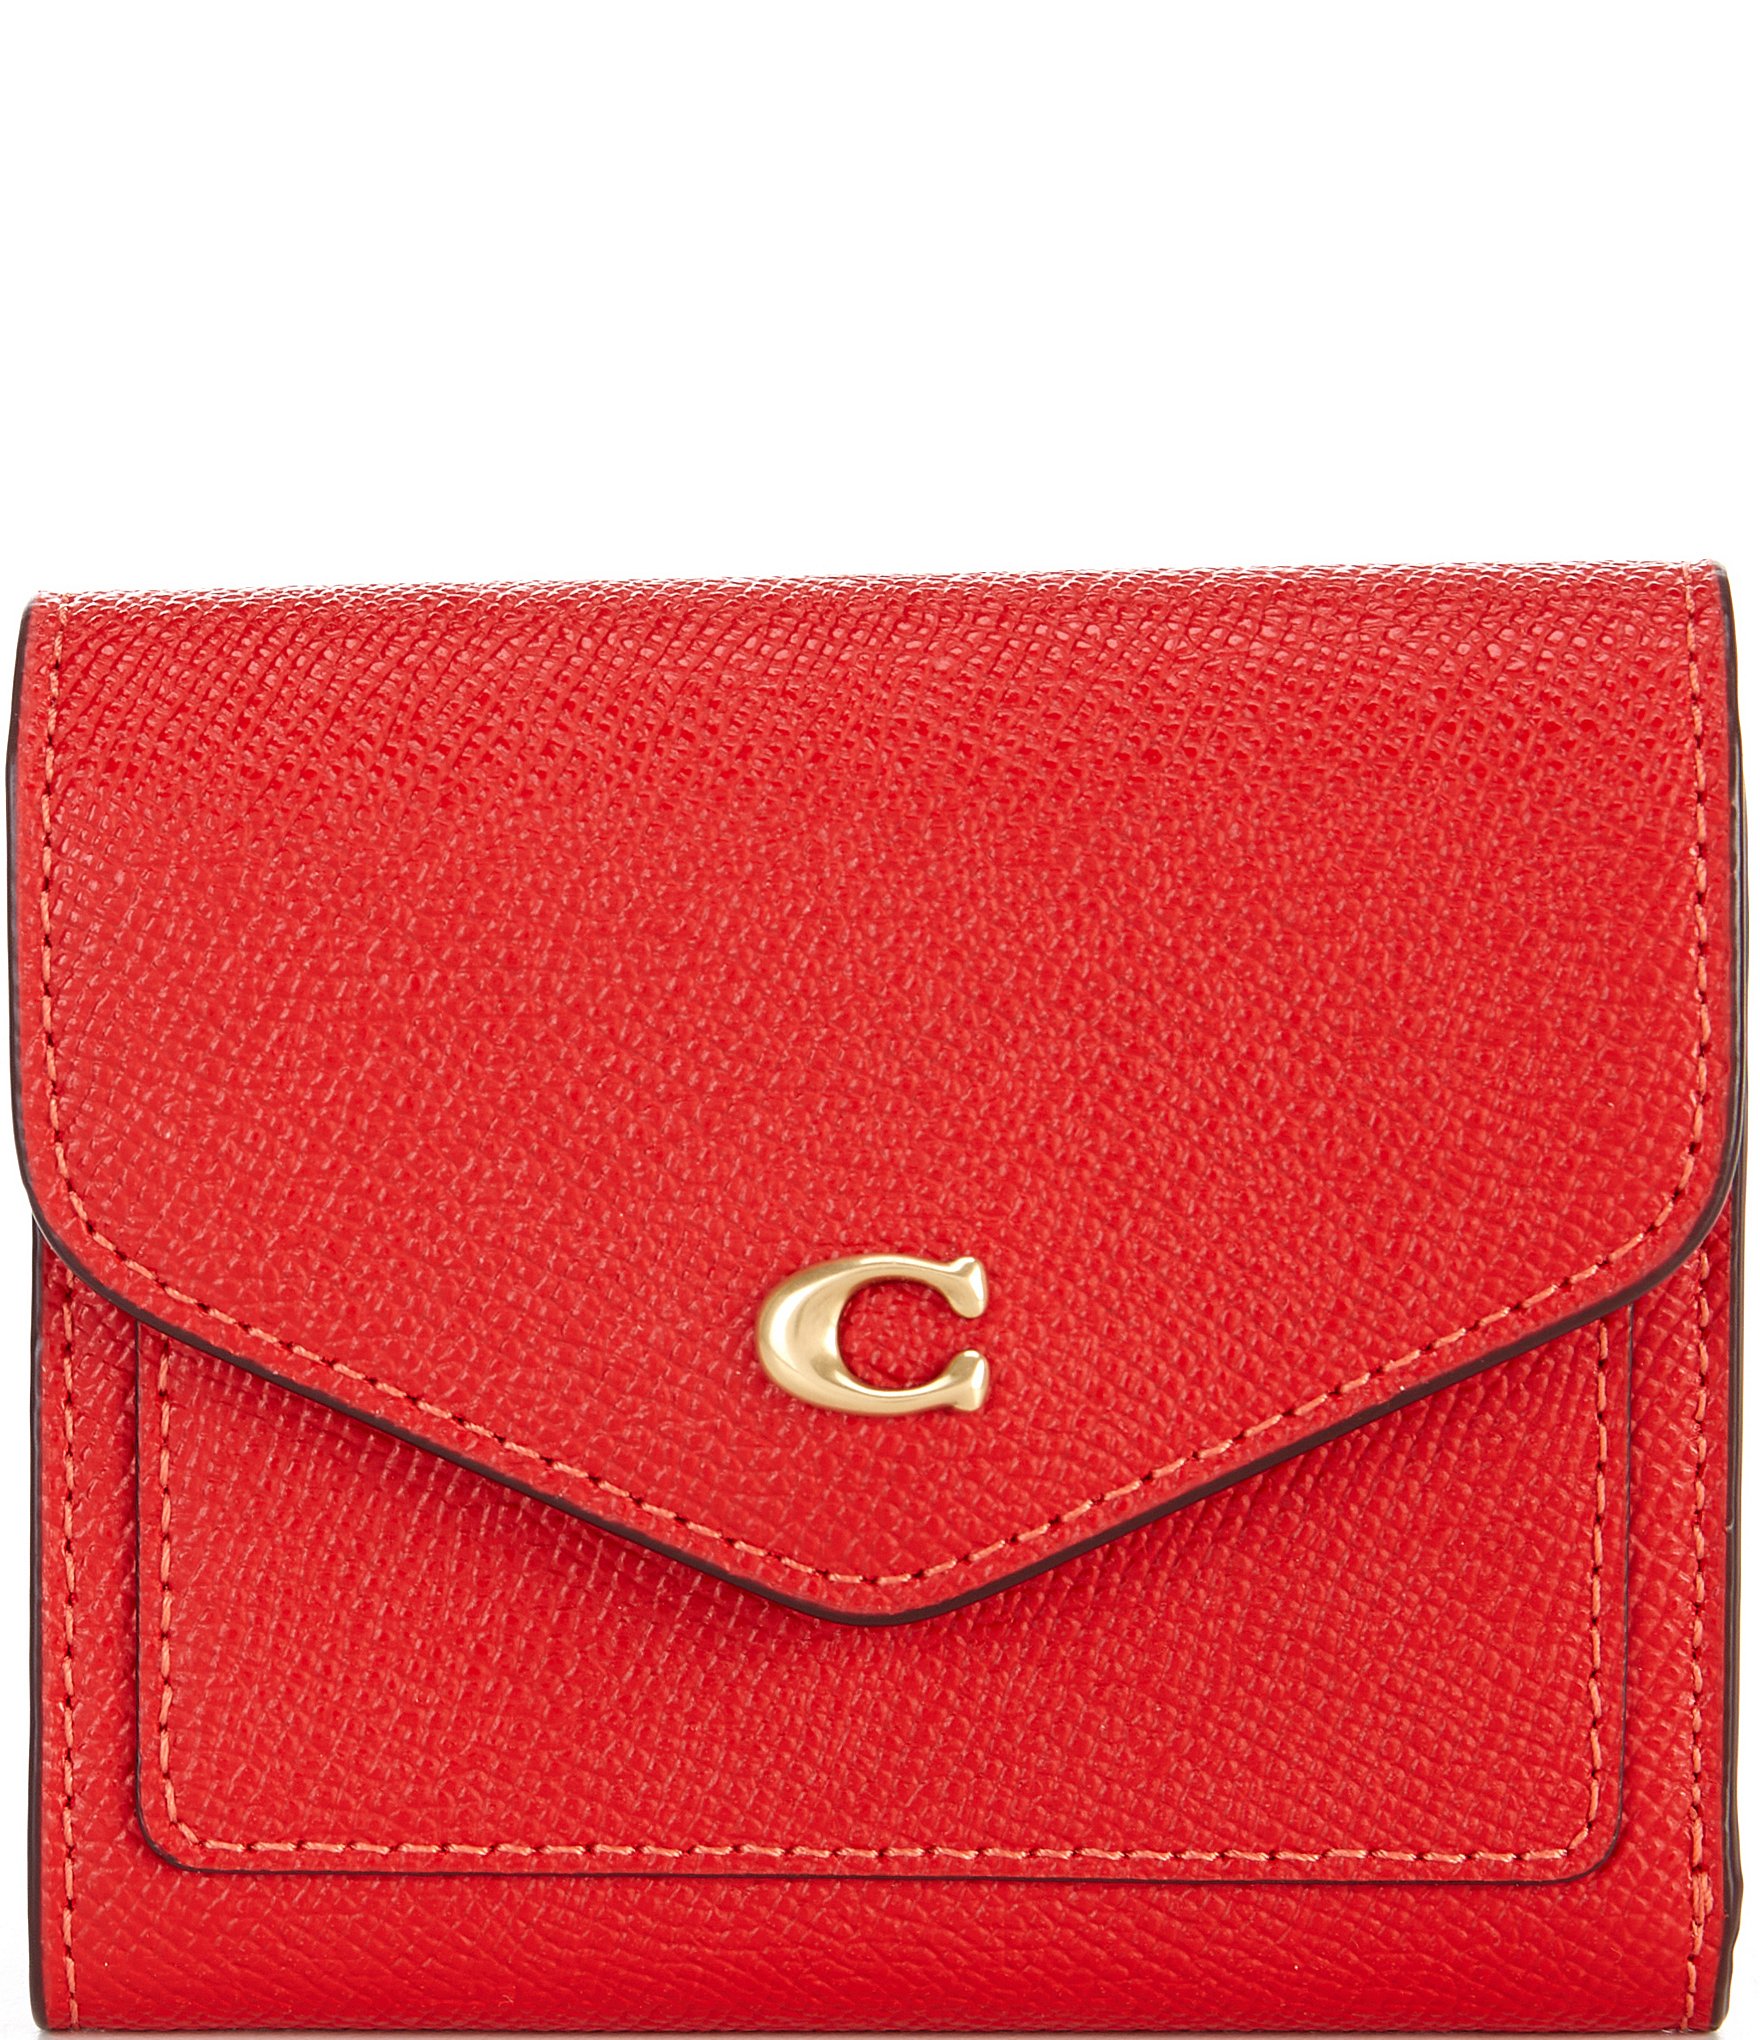 COACH Wyn Small Leather Wallet | Dillard's